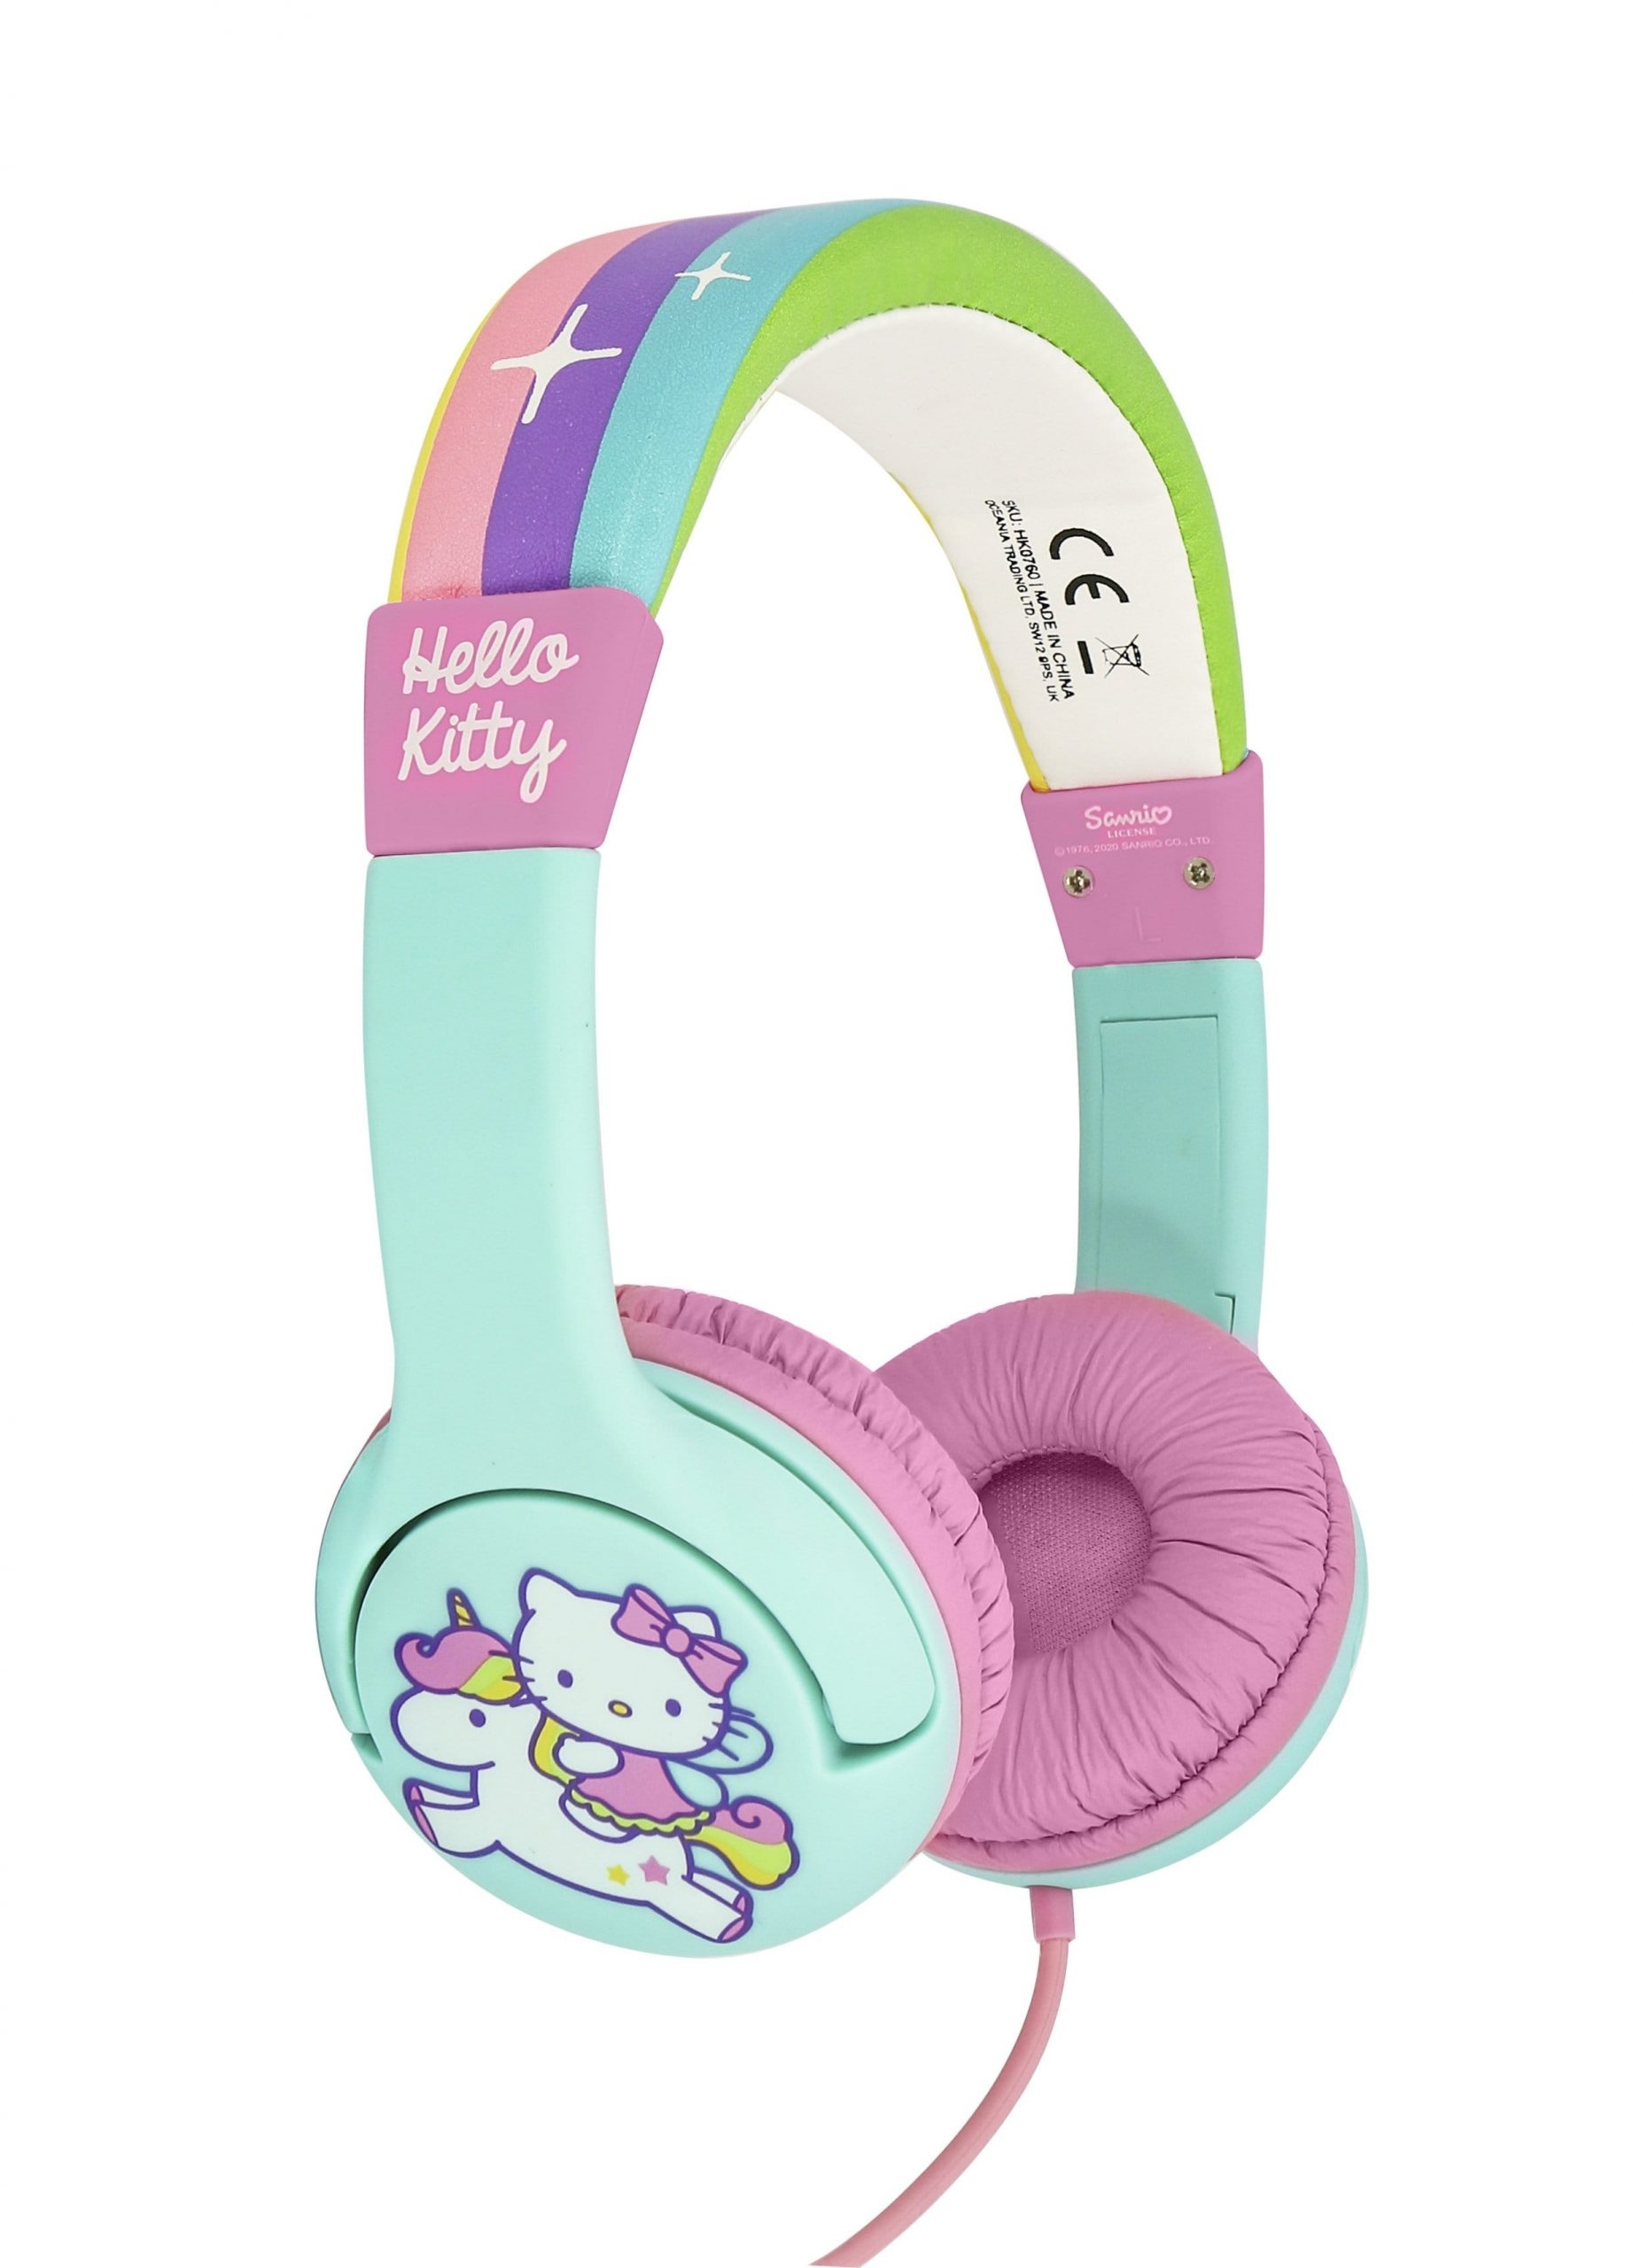 سماعات اطفال سلكية قابلة للطي 85 ديسيبل هالو كيتي او تي ال Otl Hellokitty 85db Foldable Wired Children's Headphones - 1}